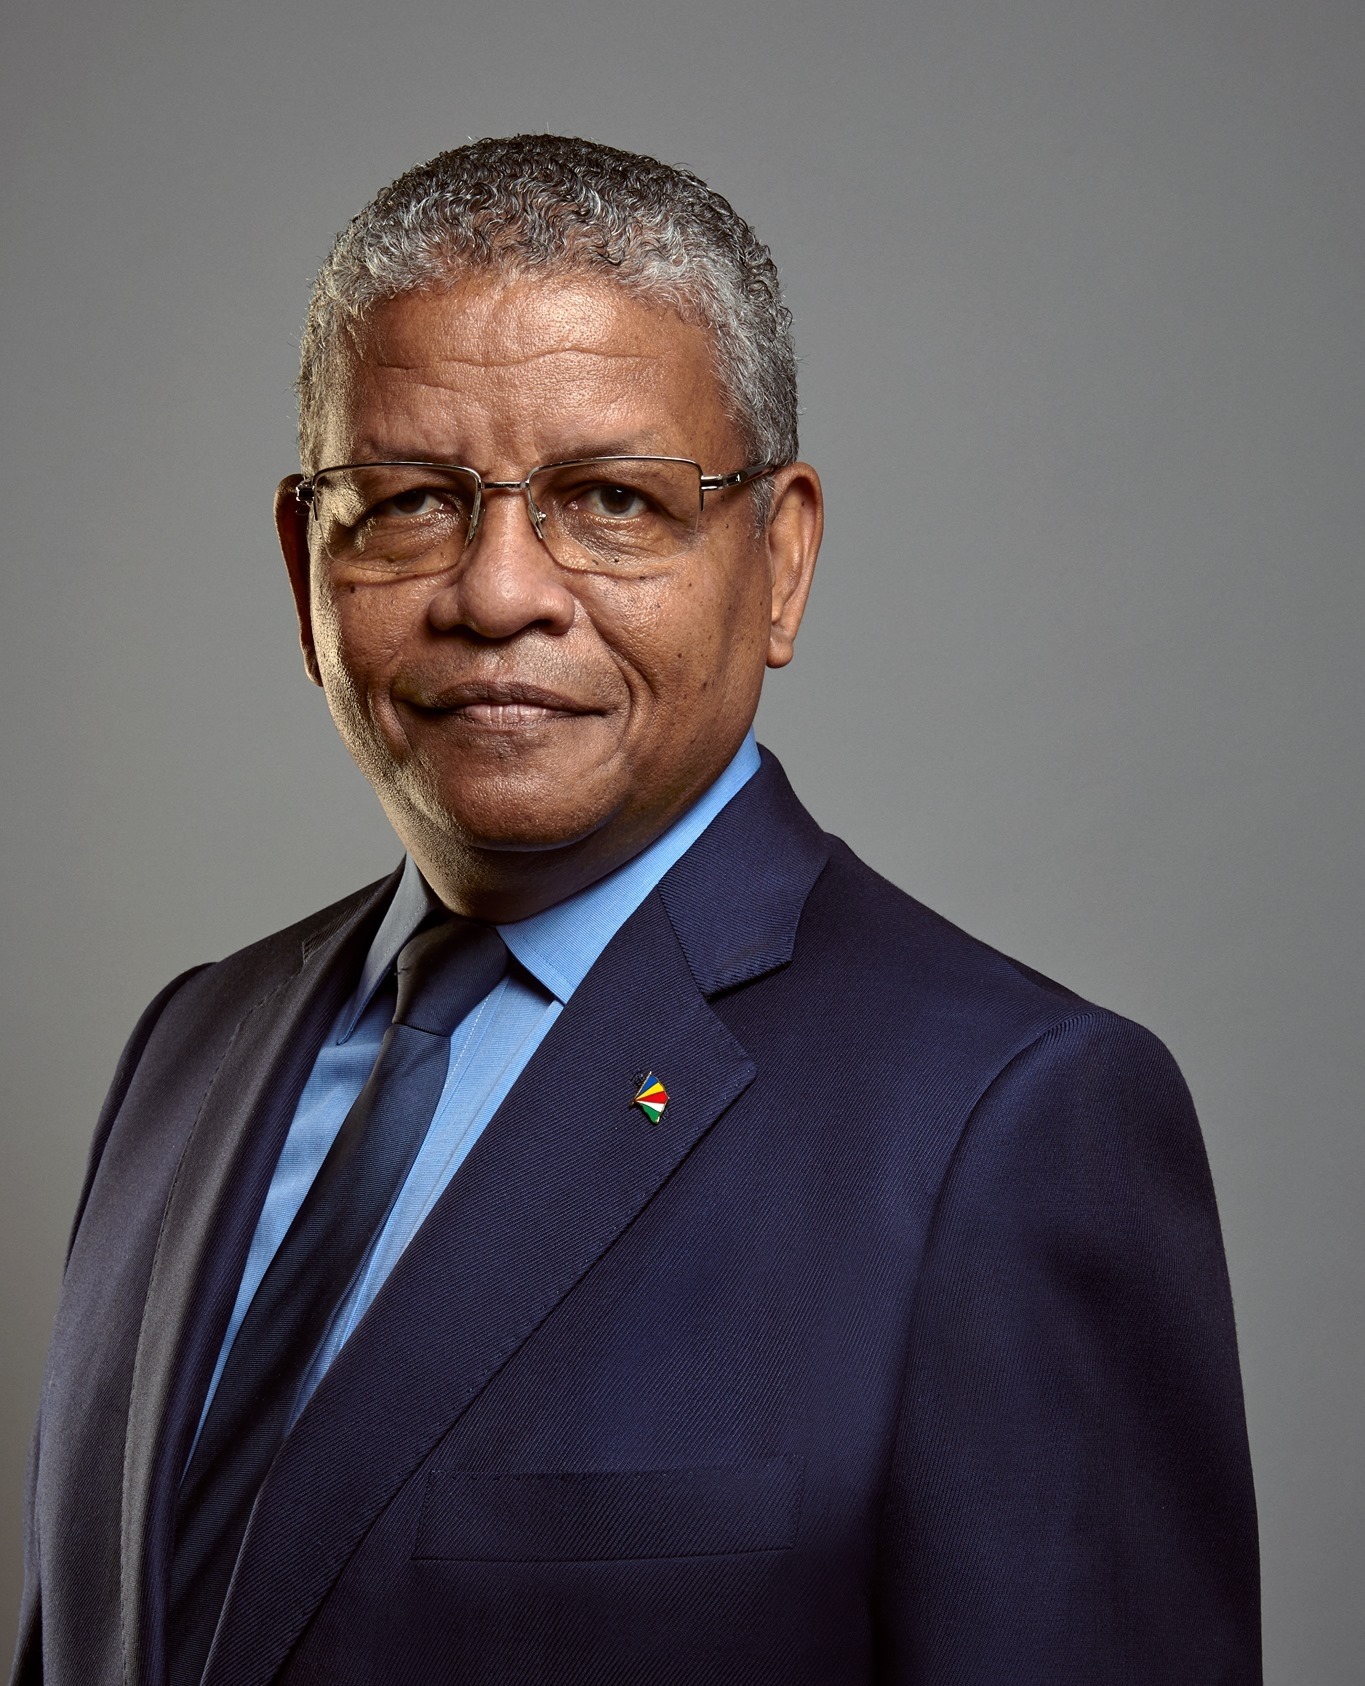 Wavel Ramkalawan, o novo e 5º Presidente das Seychelles